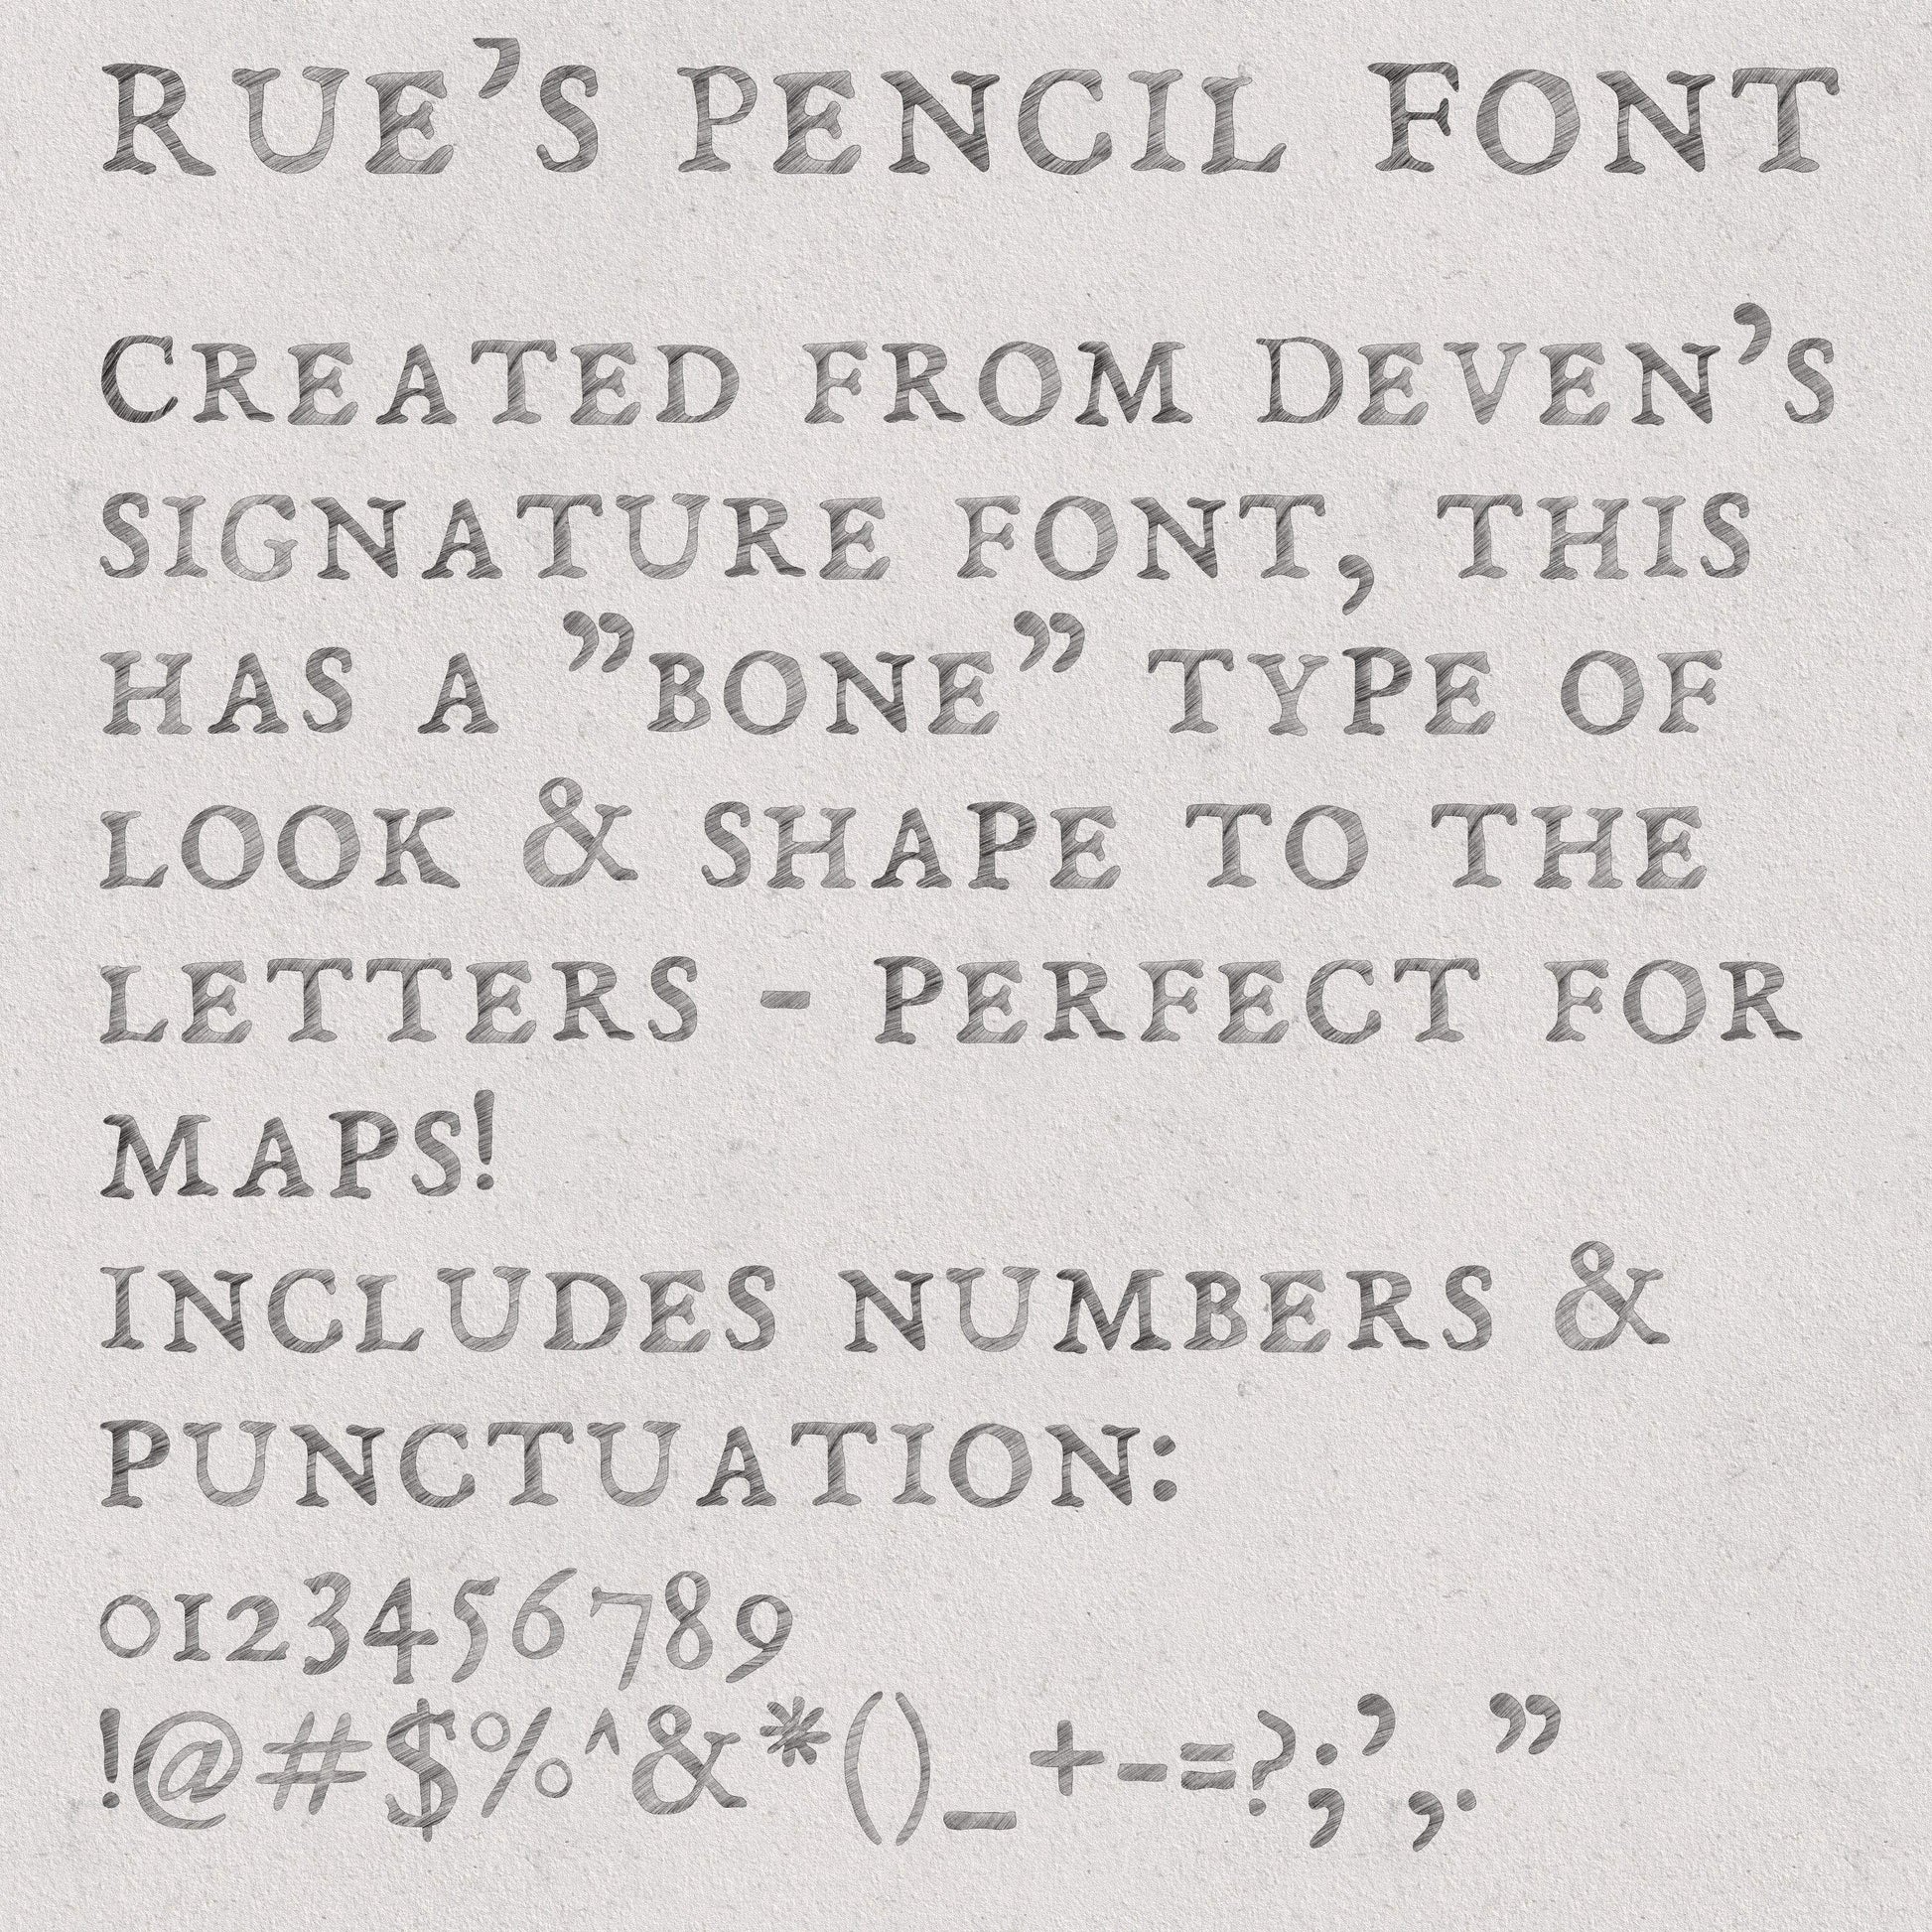 Rue's Pencil Font Font Deven Rue